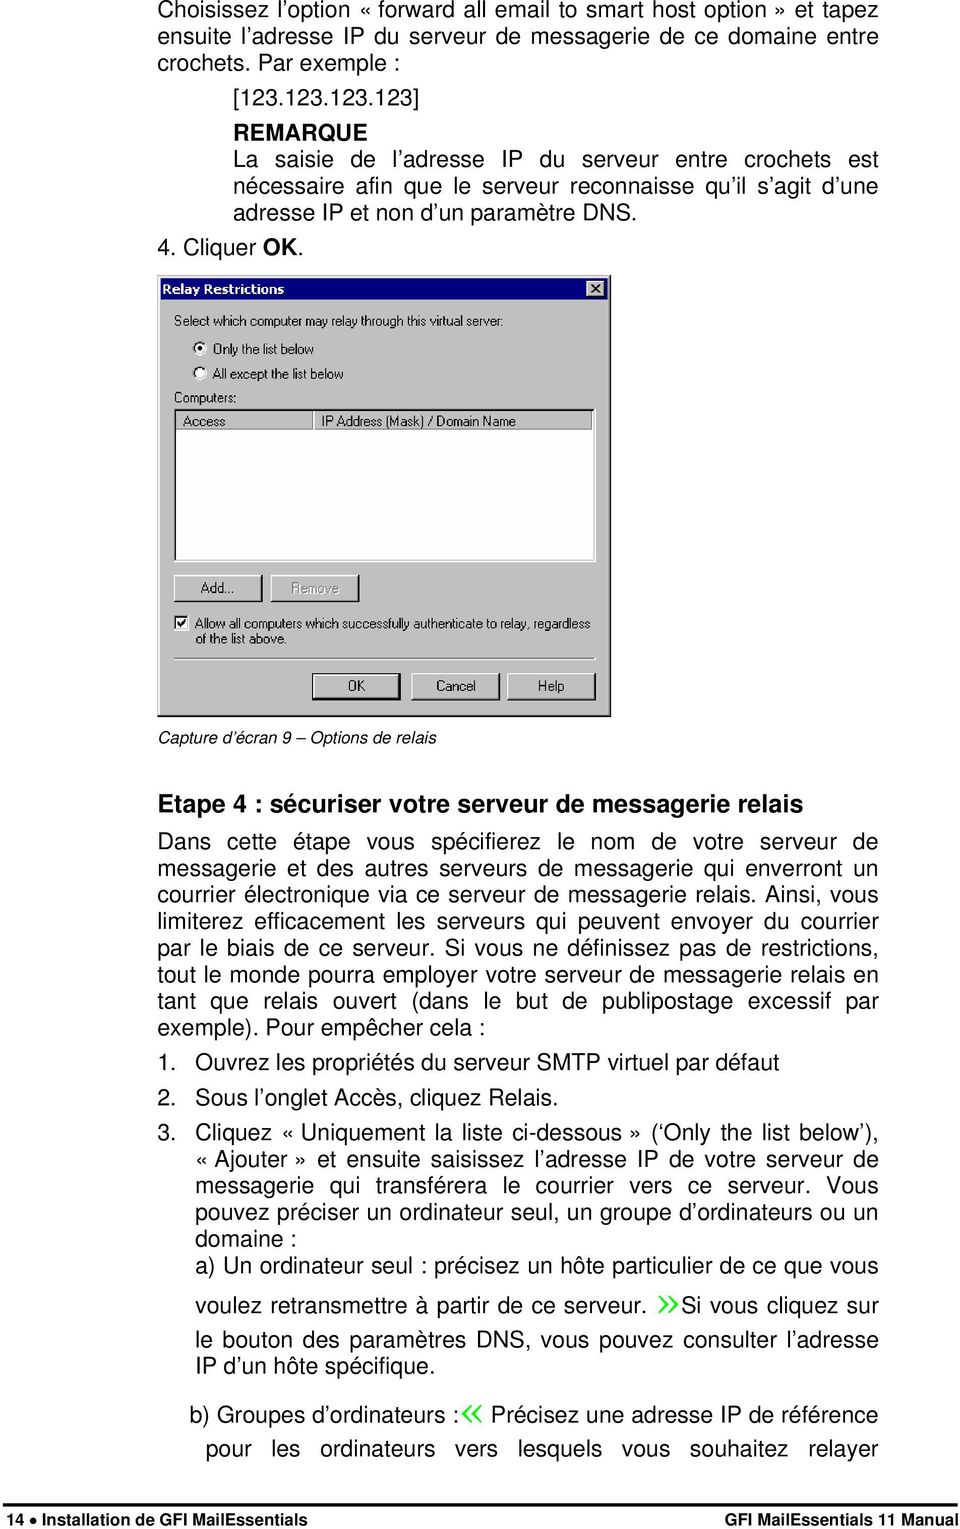 Capture d écran 9 Options de relais Etape 4 : sécuriser votre serveur de messagerie relais Dans cette étape vous spécifierez le nom de votre serveur de messagerie et des autres serveurs de messagerie